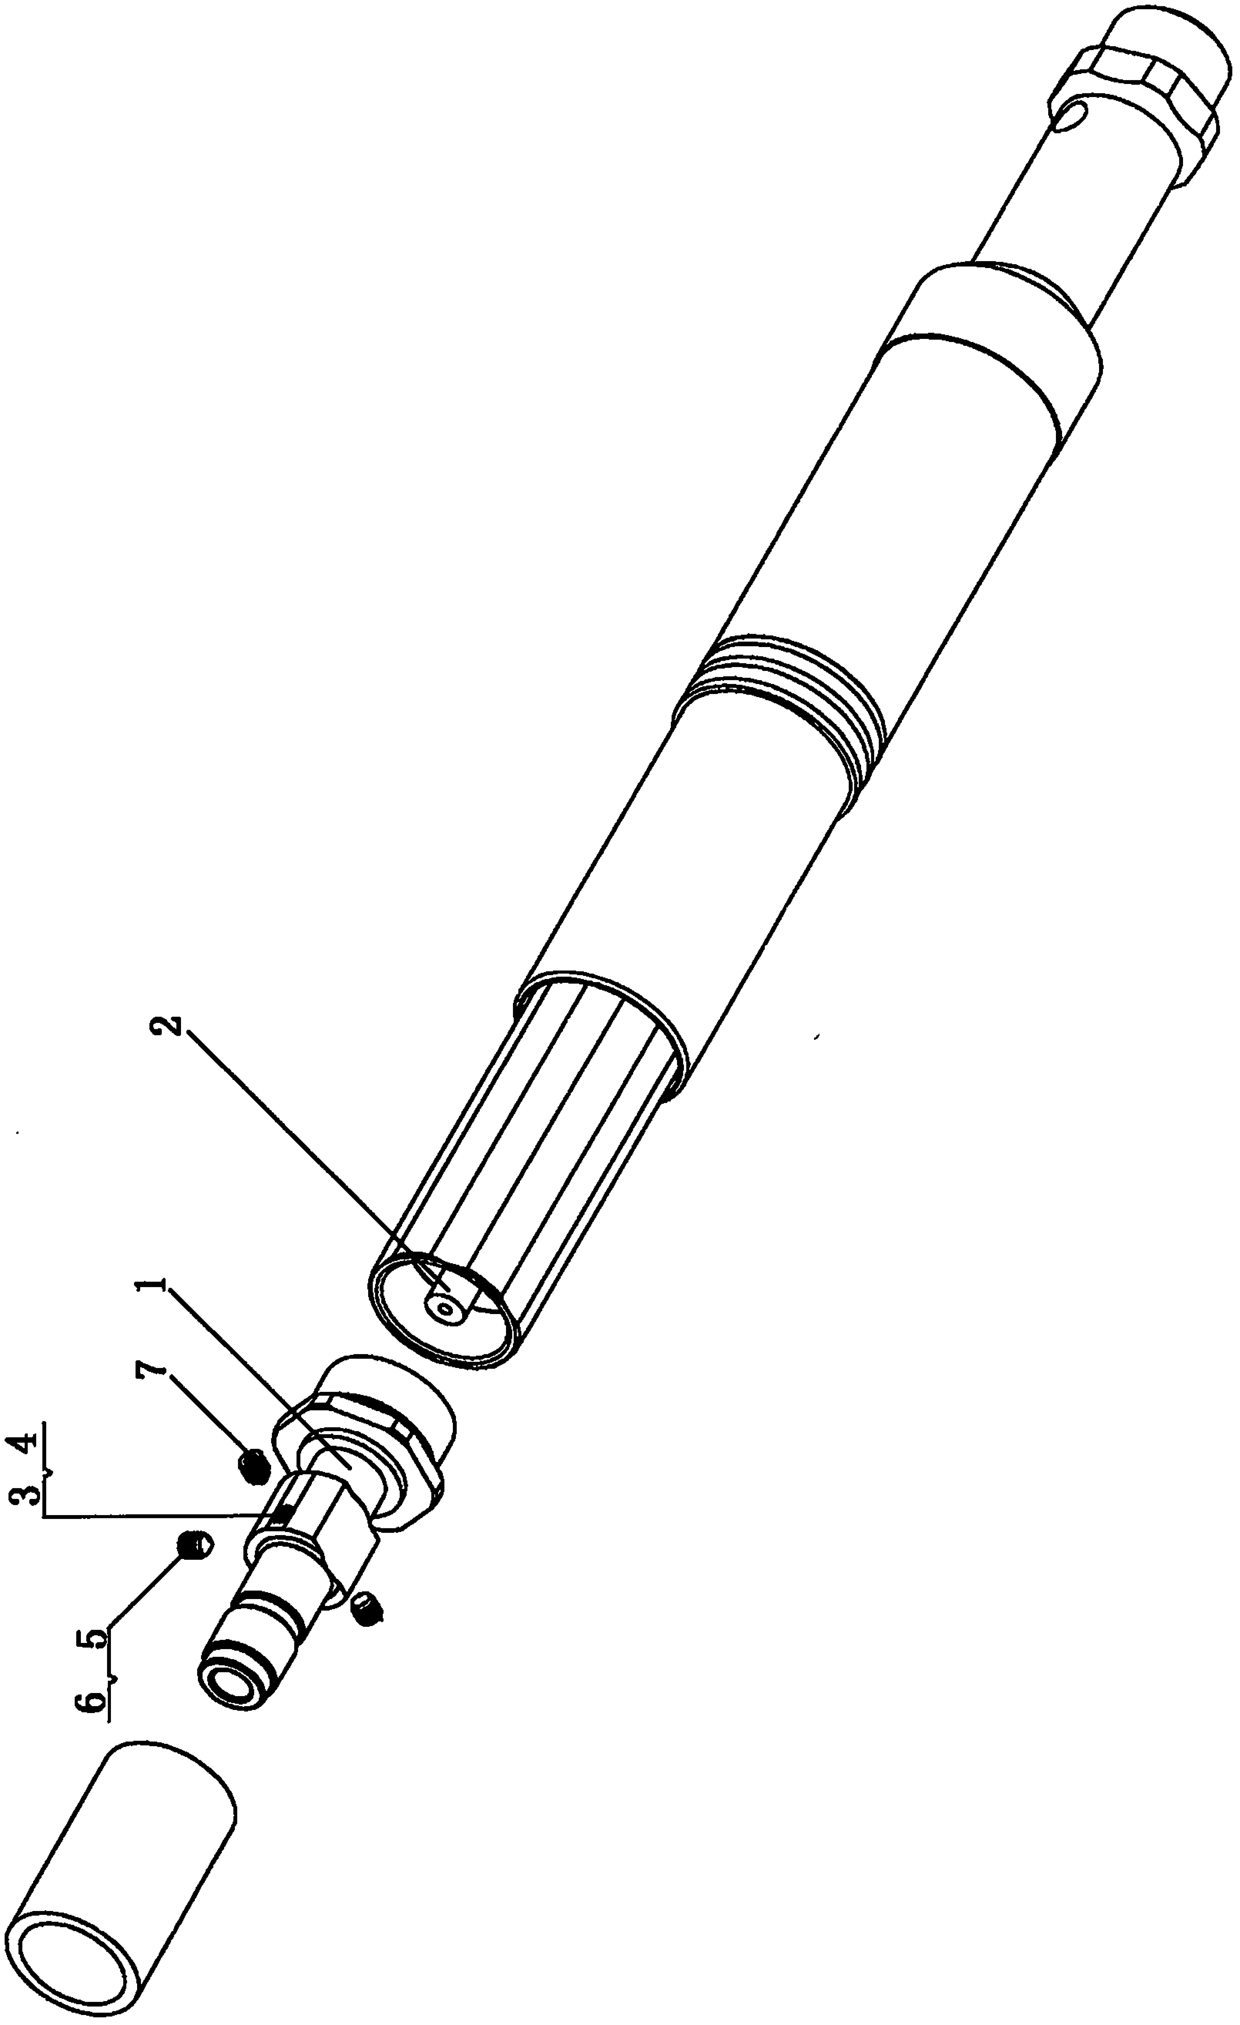 A power-adjustable type axial nailer